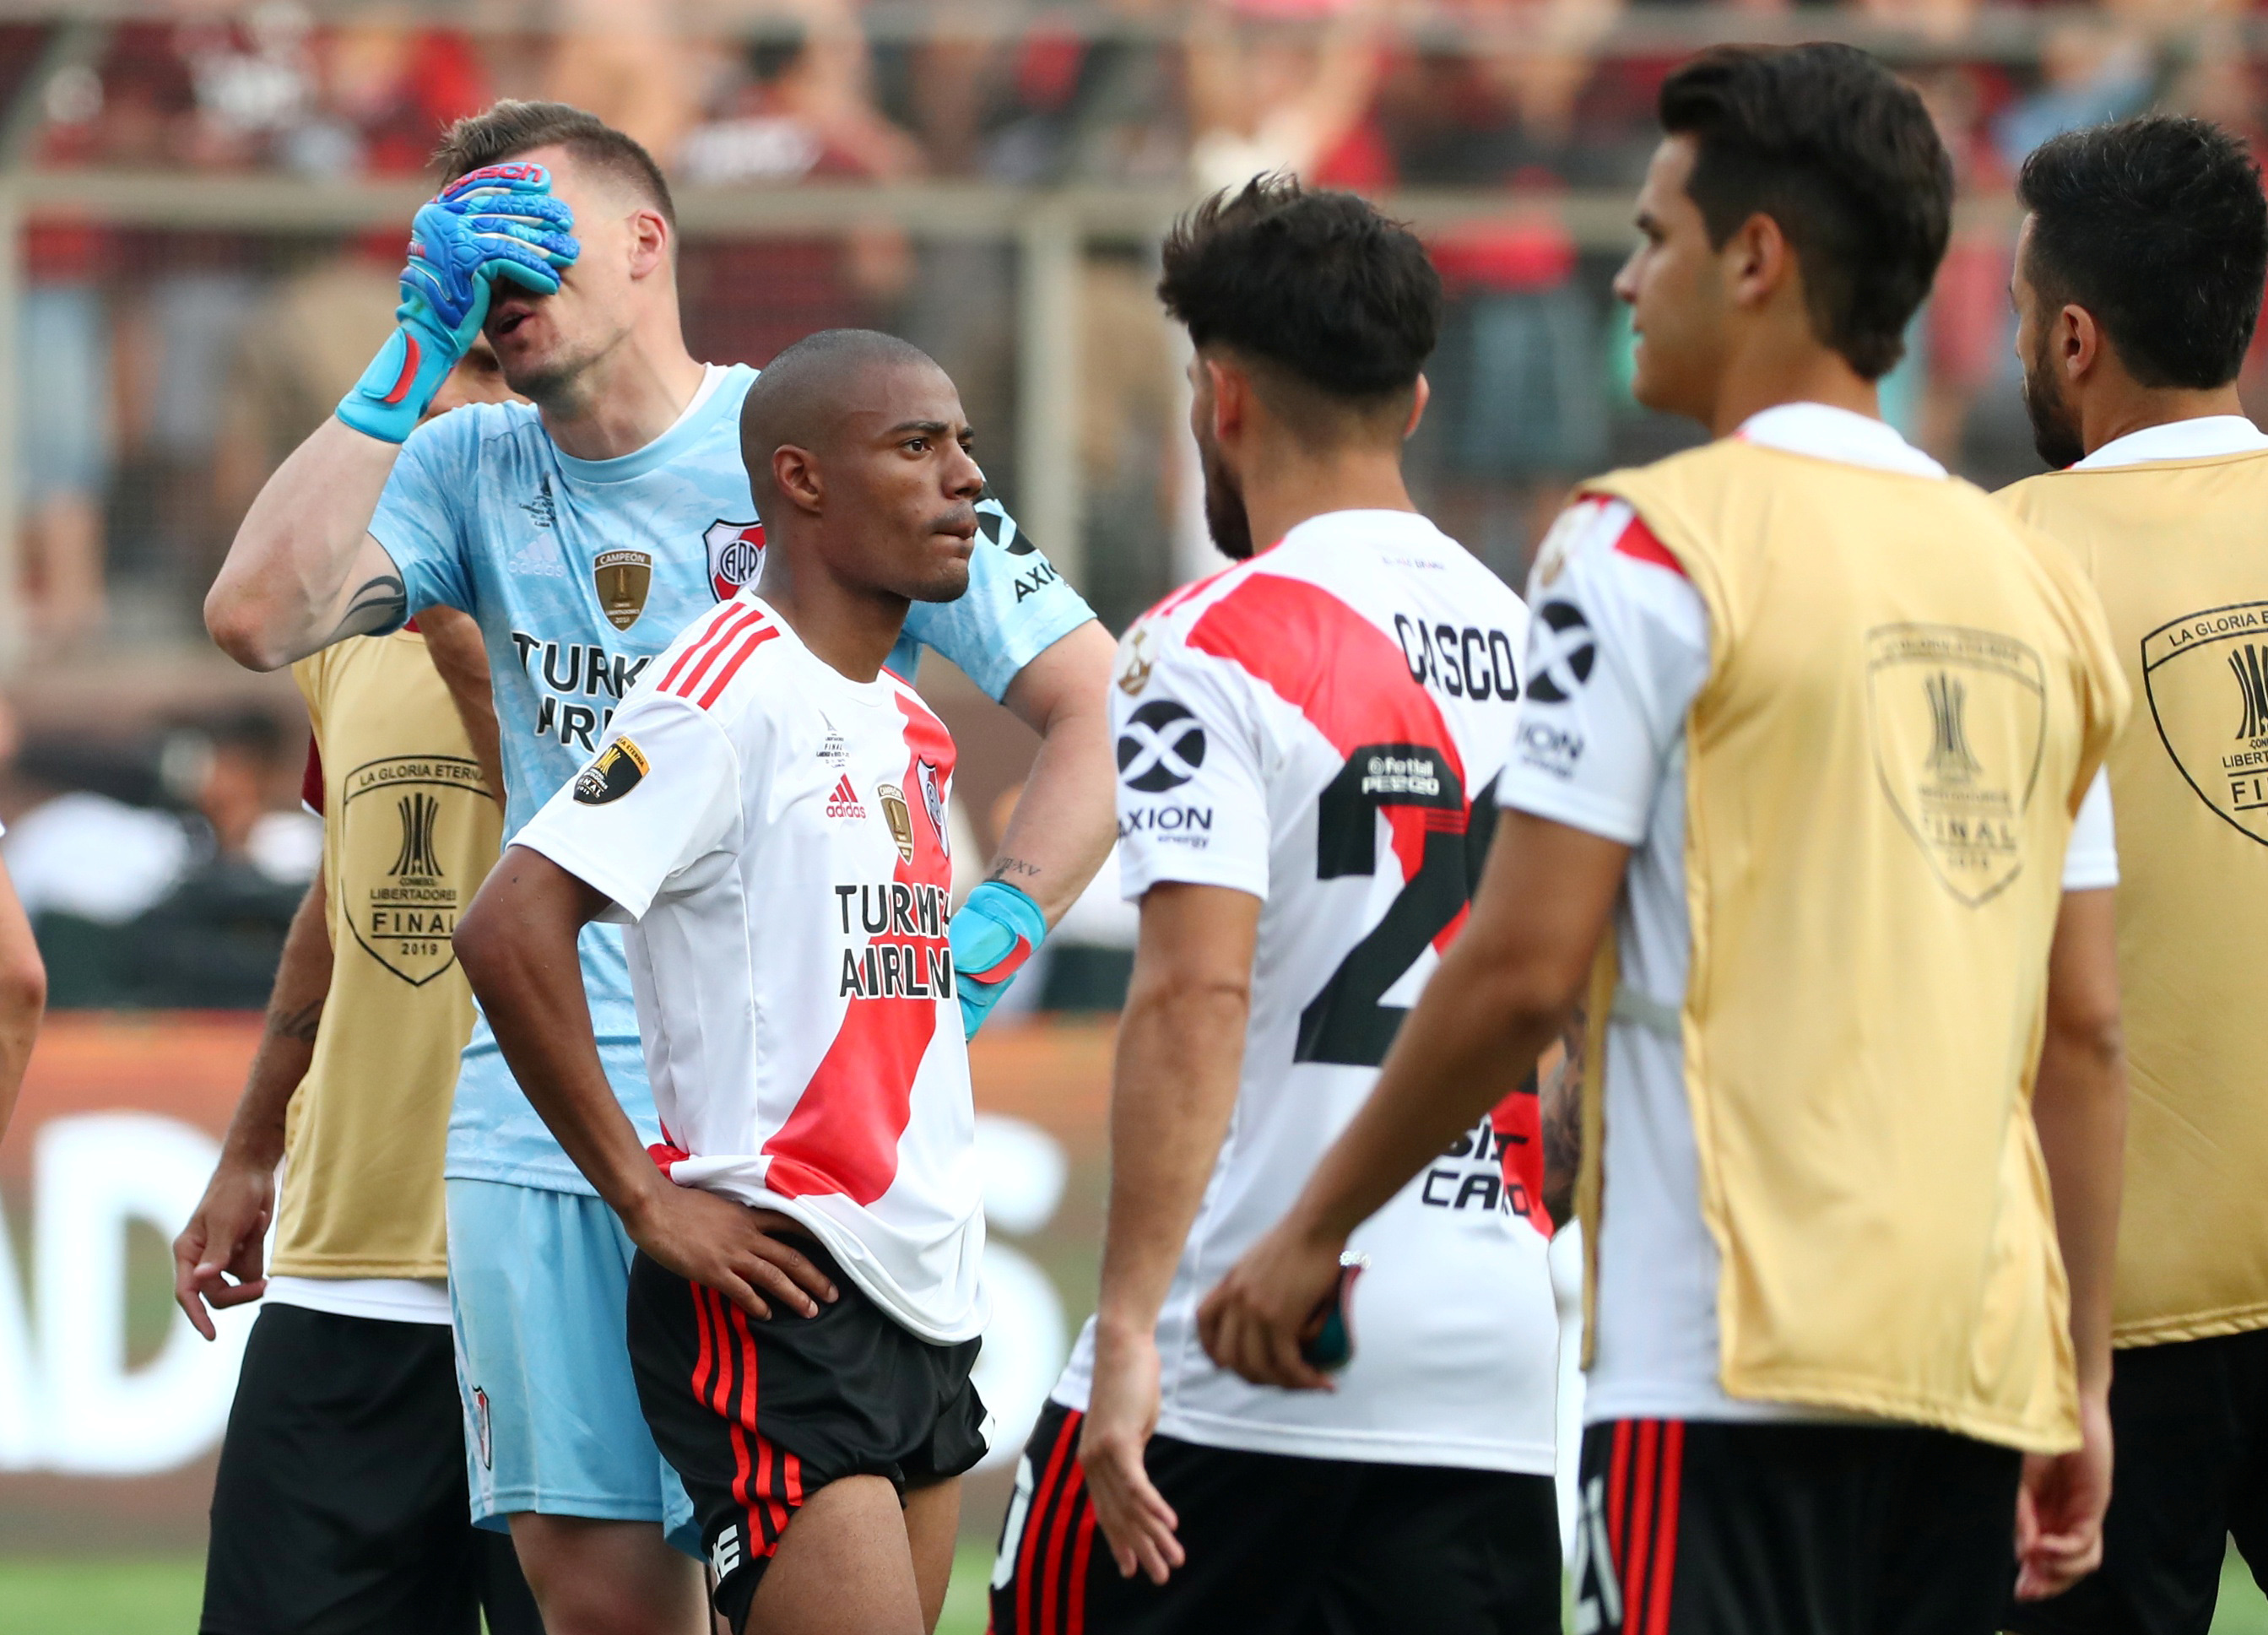 Copa Libertadores - Final - Flamengo v River Plate